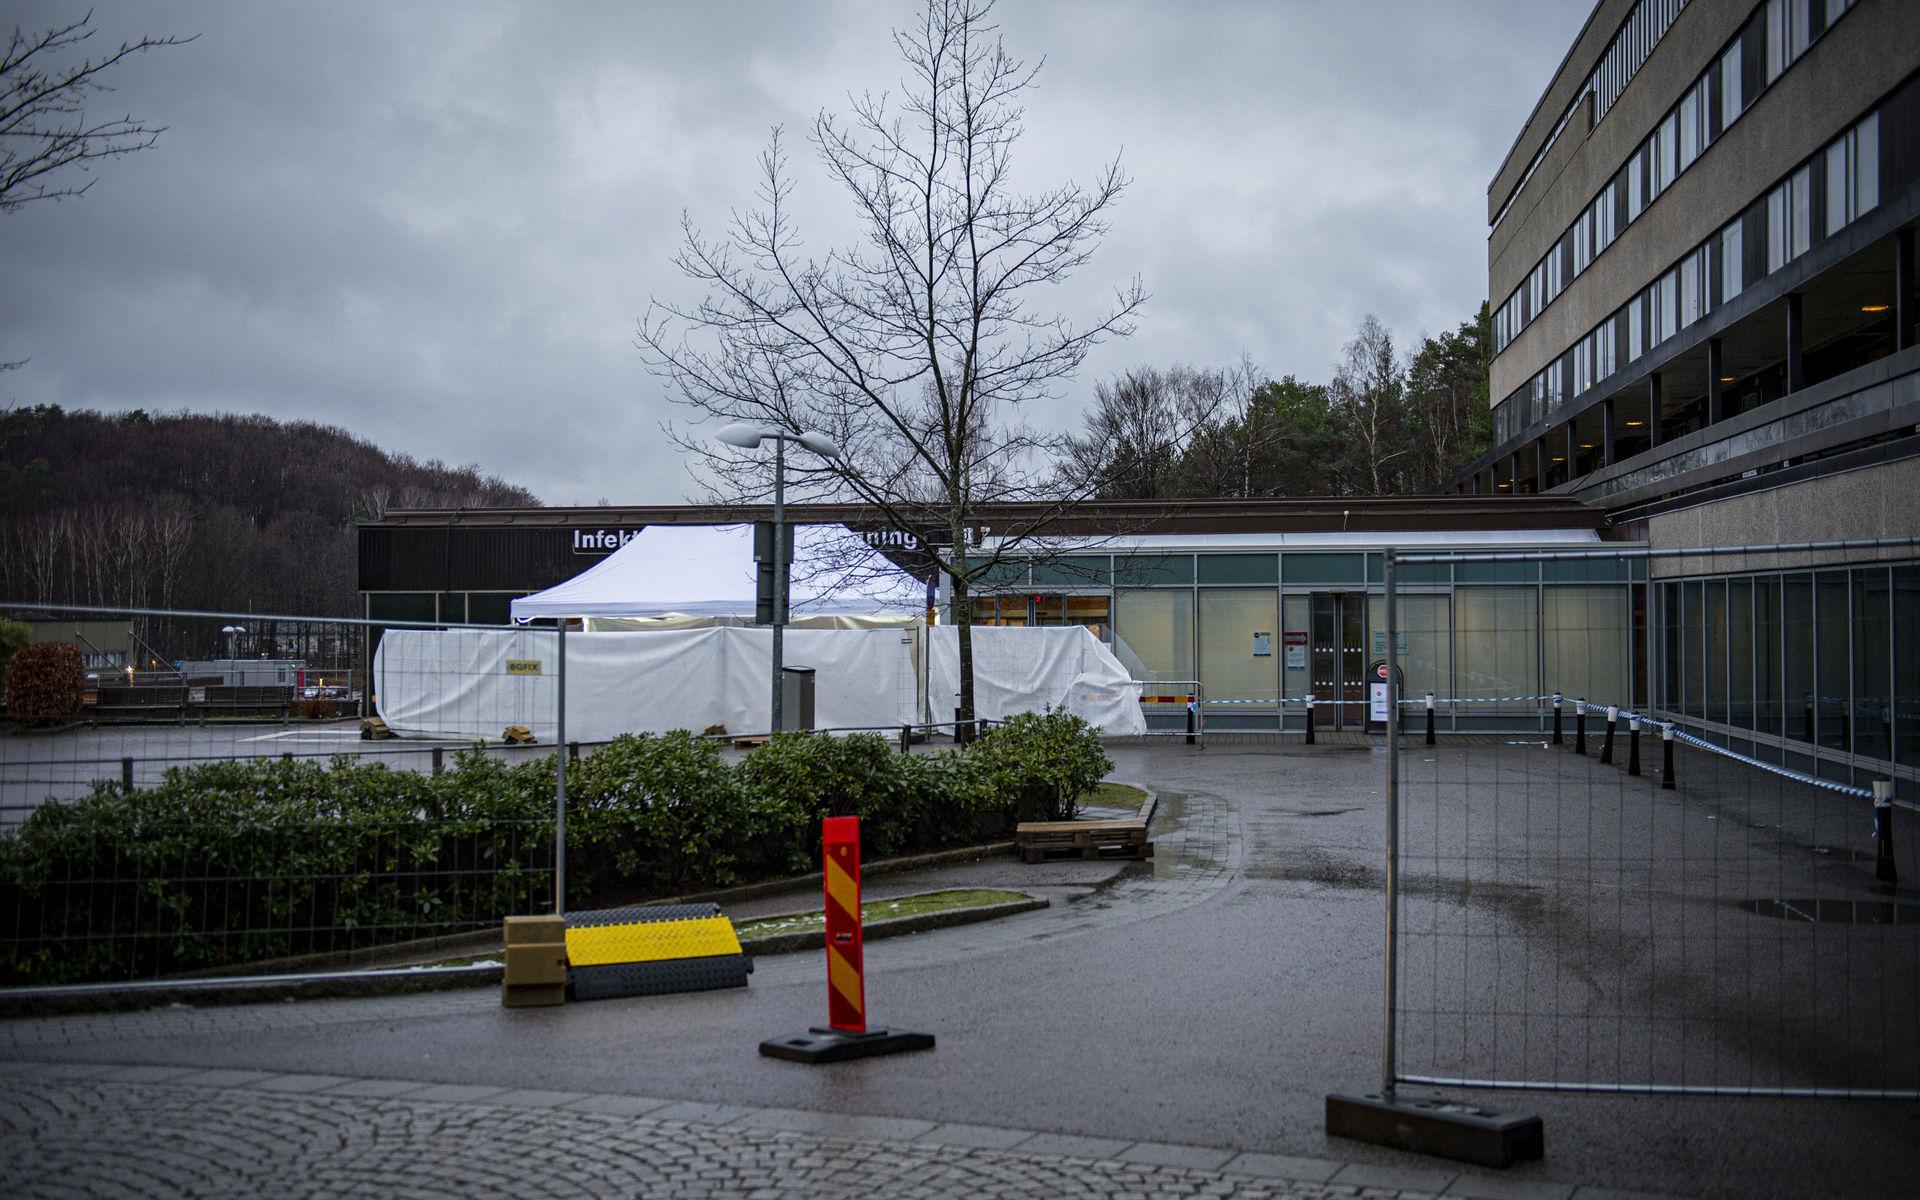 13 coronafall har nu bekräftats i Göteborgsområdet, där Östra sjukhusets infektionsmottagning har hand om provtagningarna.